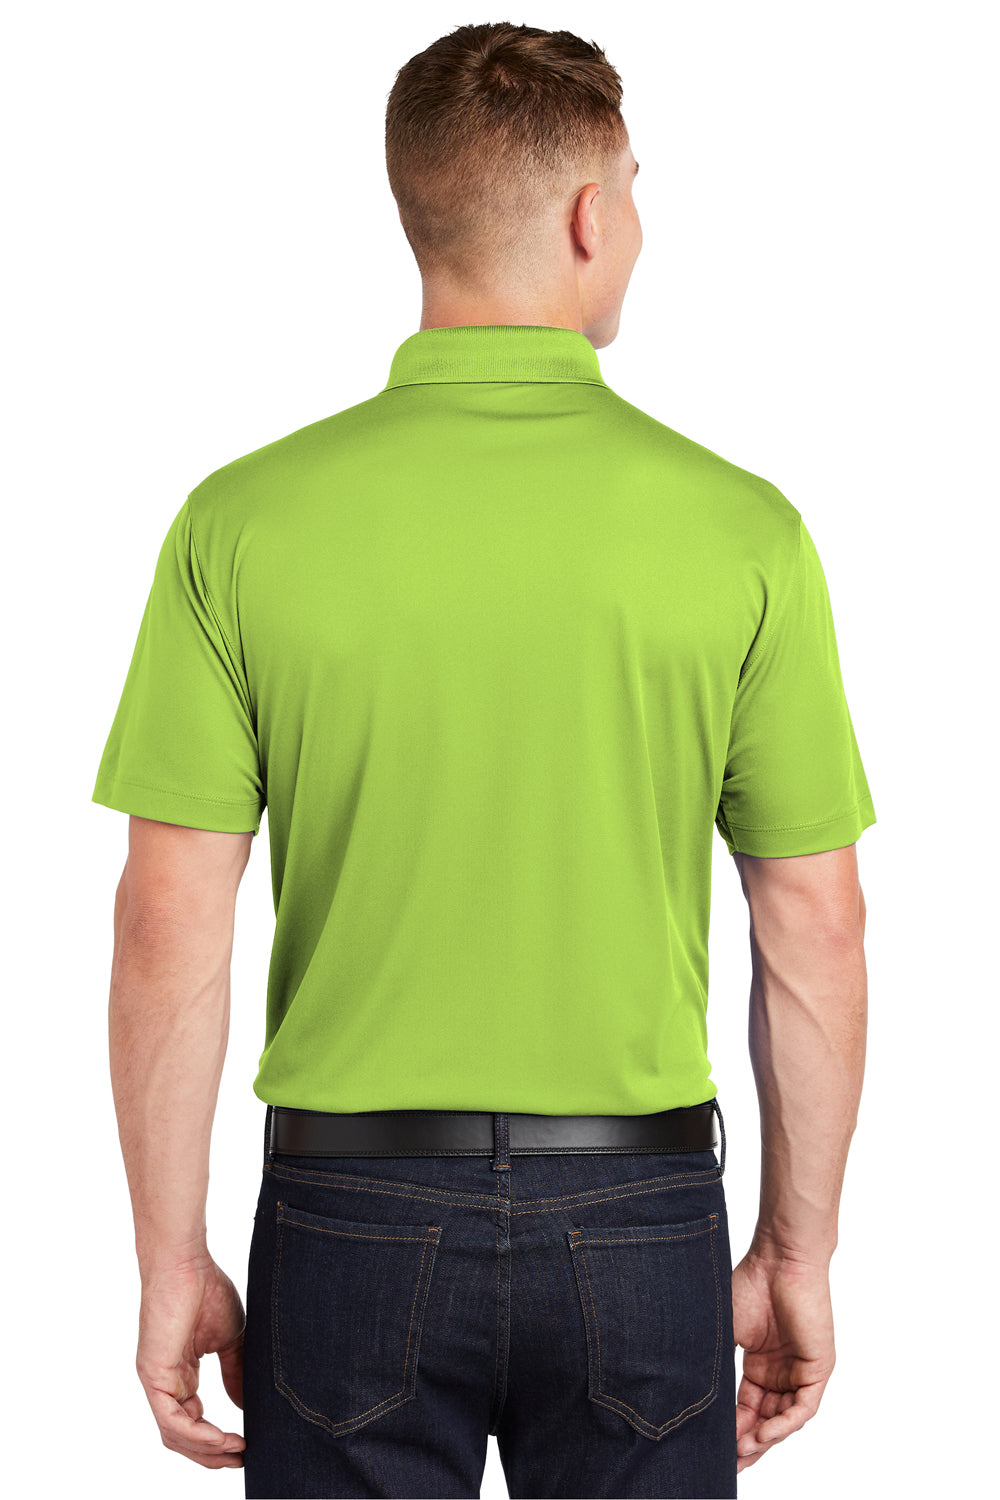 Sport-Tek ST650 Mens Sport-Wick Moisture Wicking Short Sleeve Polo Shirt Lime Green Back